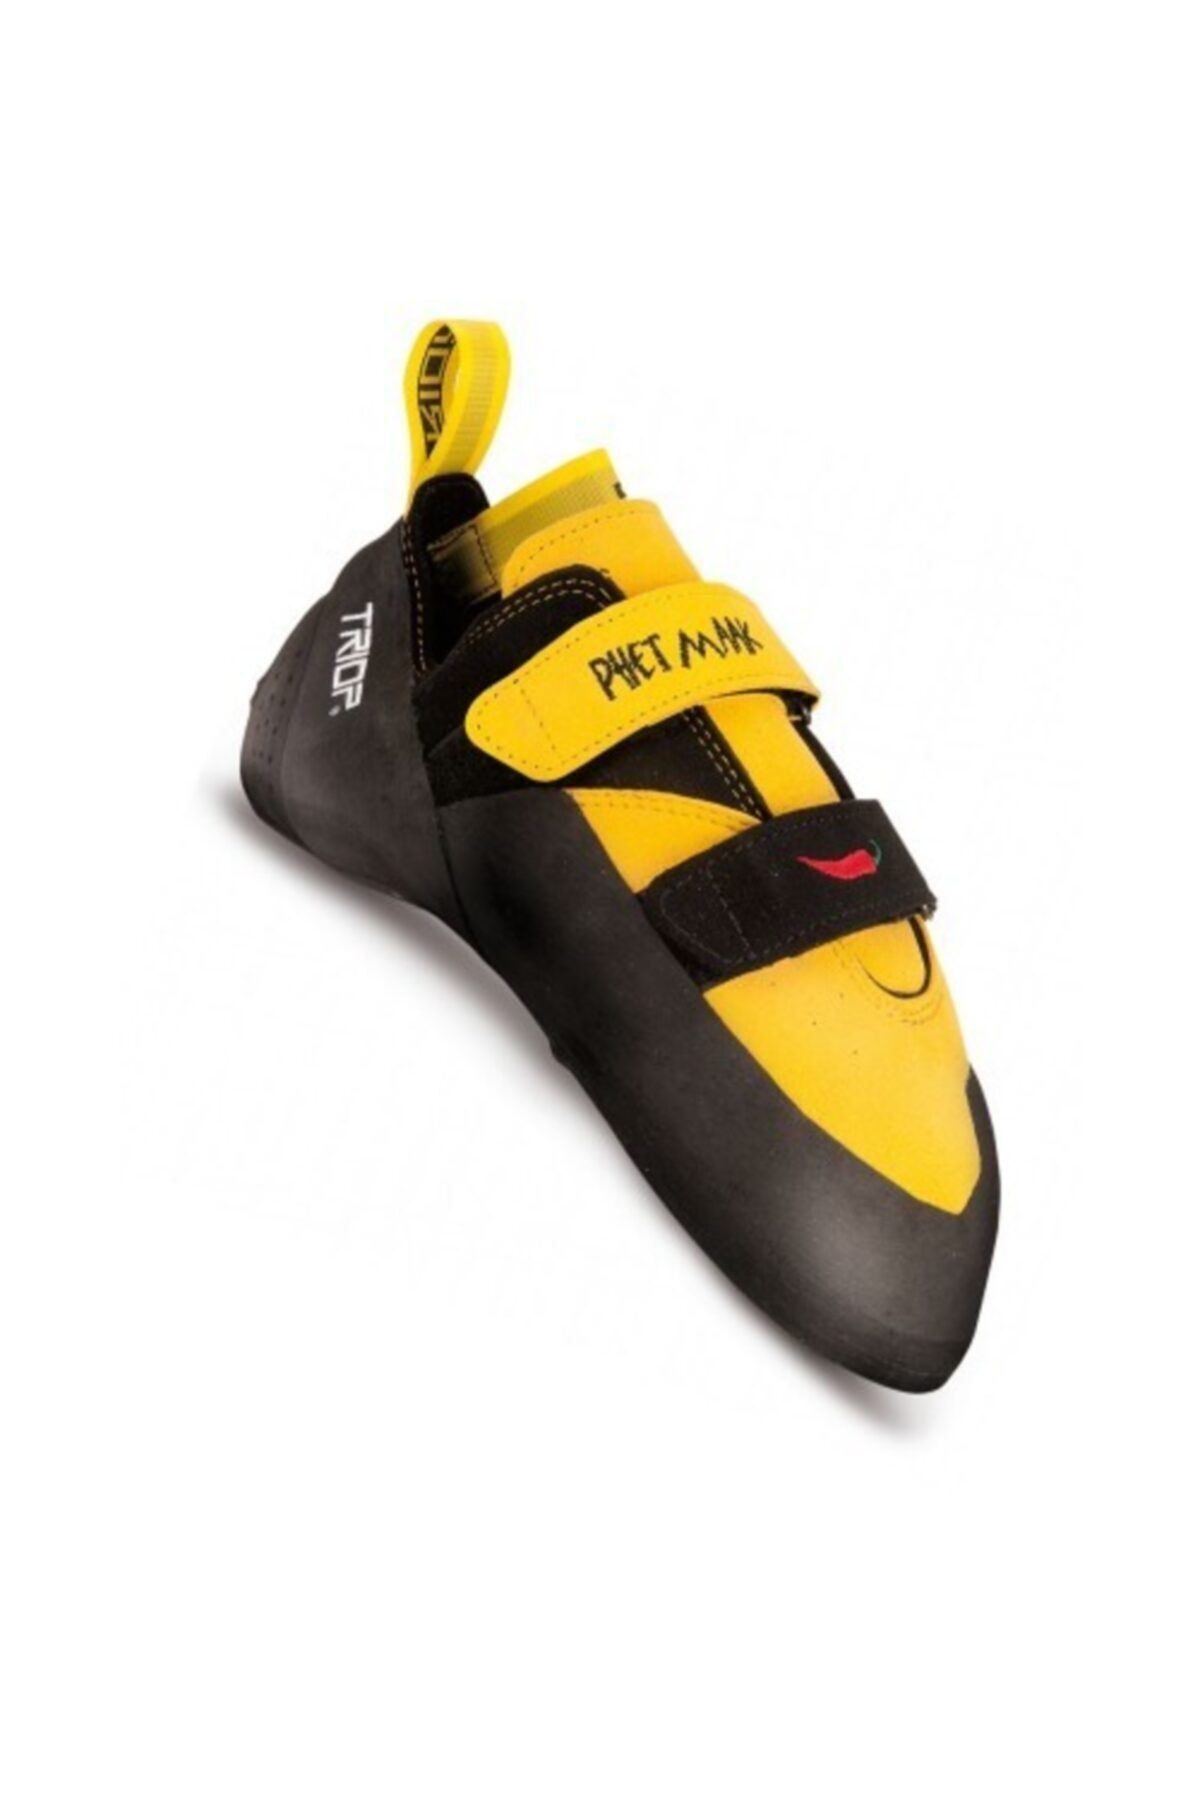 Triop Phet Maak Vcr Sarı/siyah Trıop Tırmanış Ayakkabısı